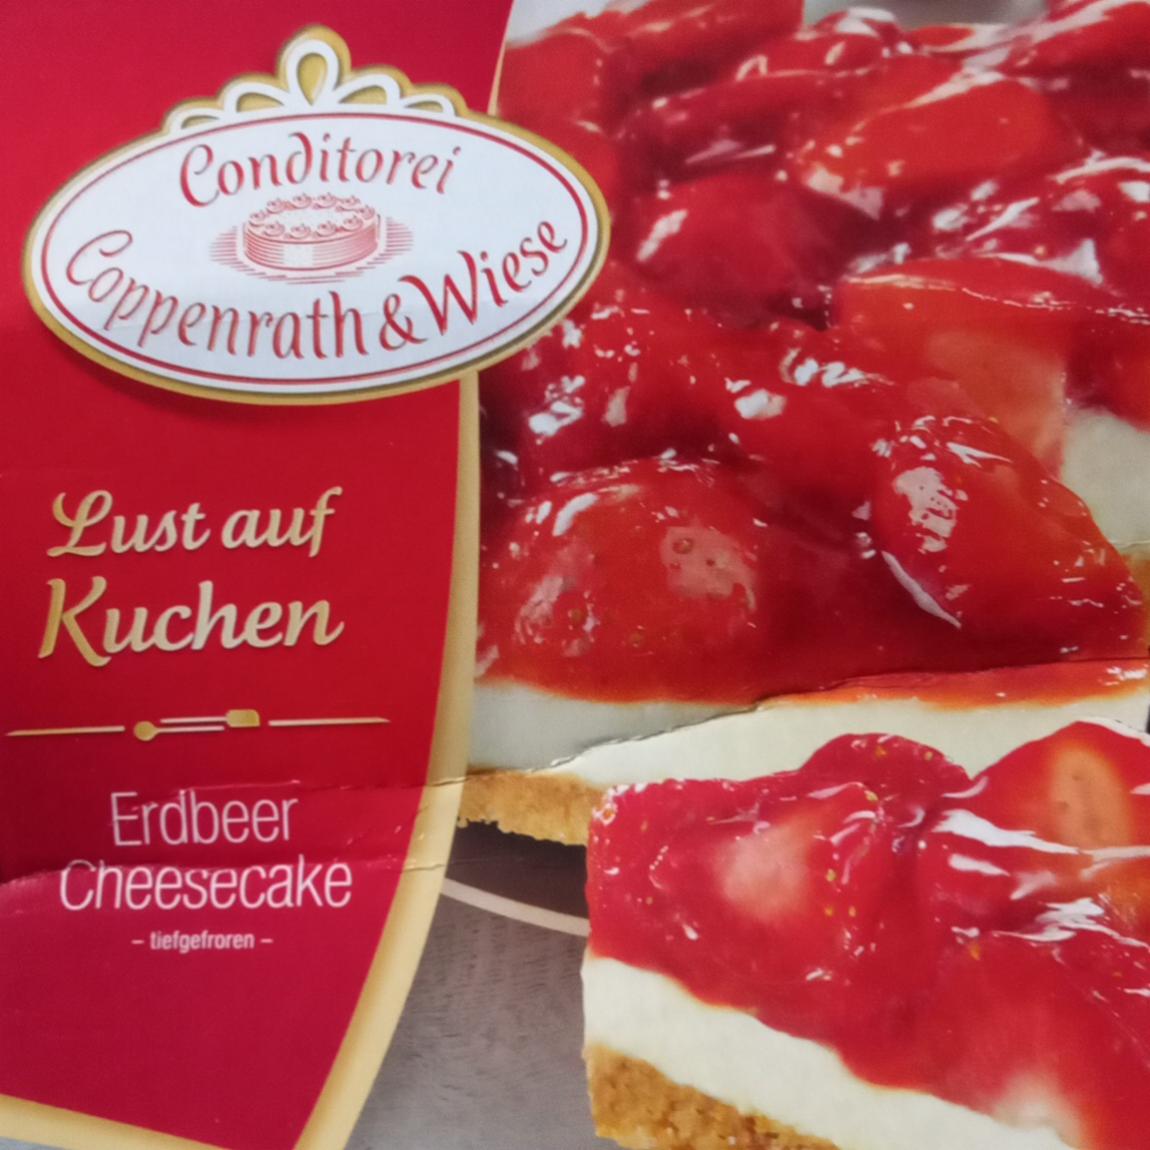 Фото - Erdbeer Cheesecake Conditorei Coppenrath & Wiese